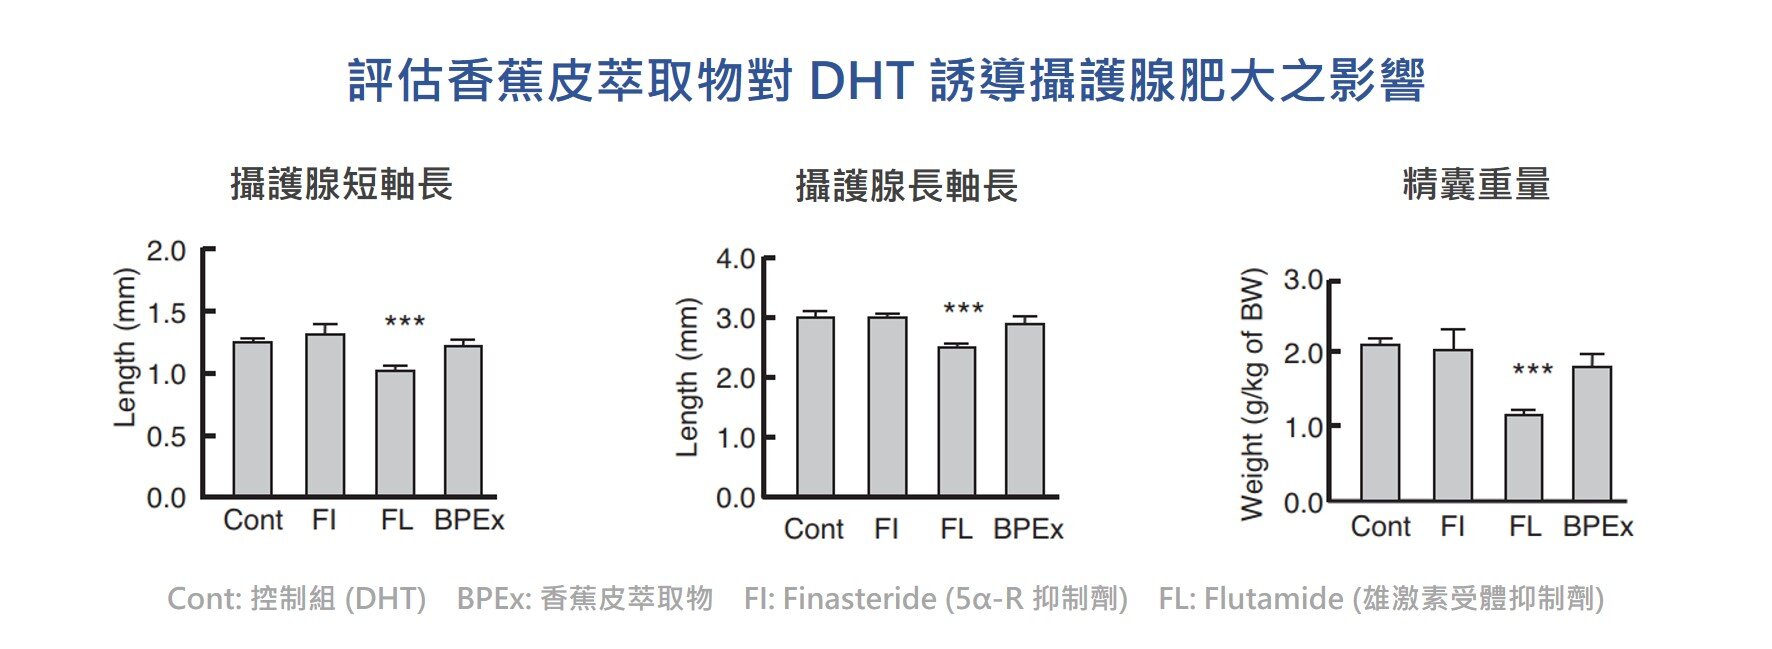 香蕉皮 萃取物對 DHT 誘導 攝護腺 肥大不具有顯著的抑制 功效